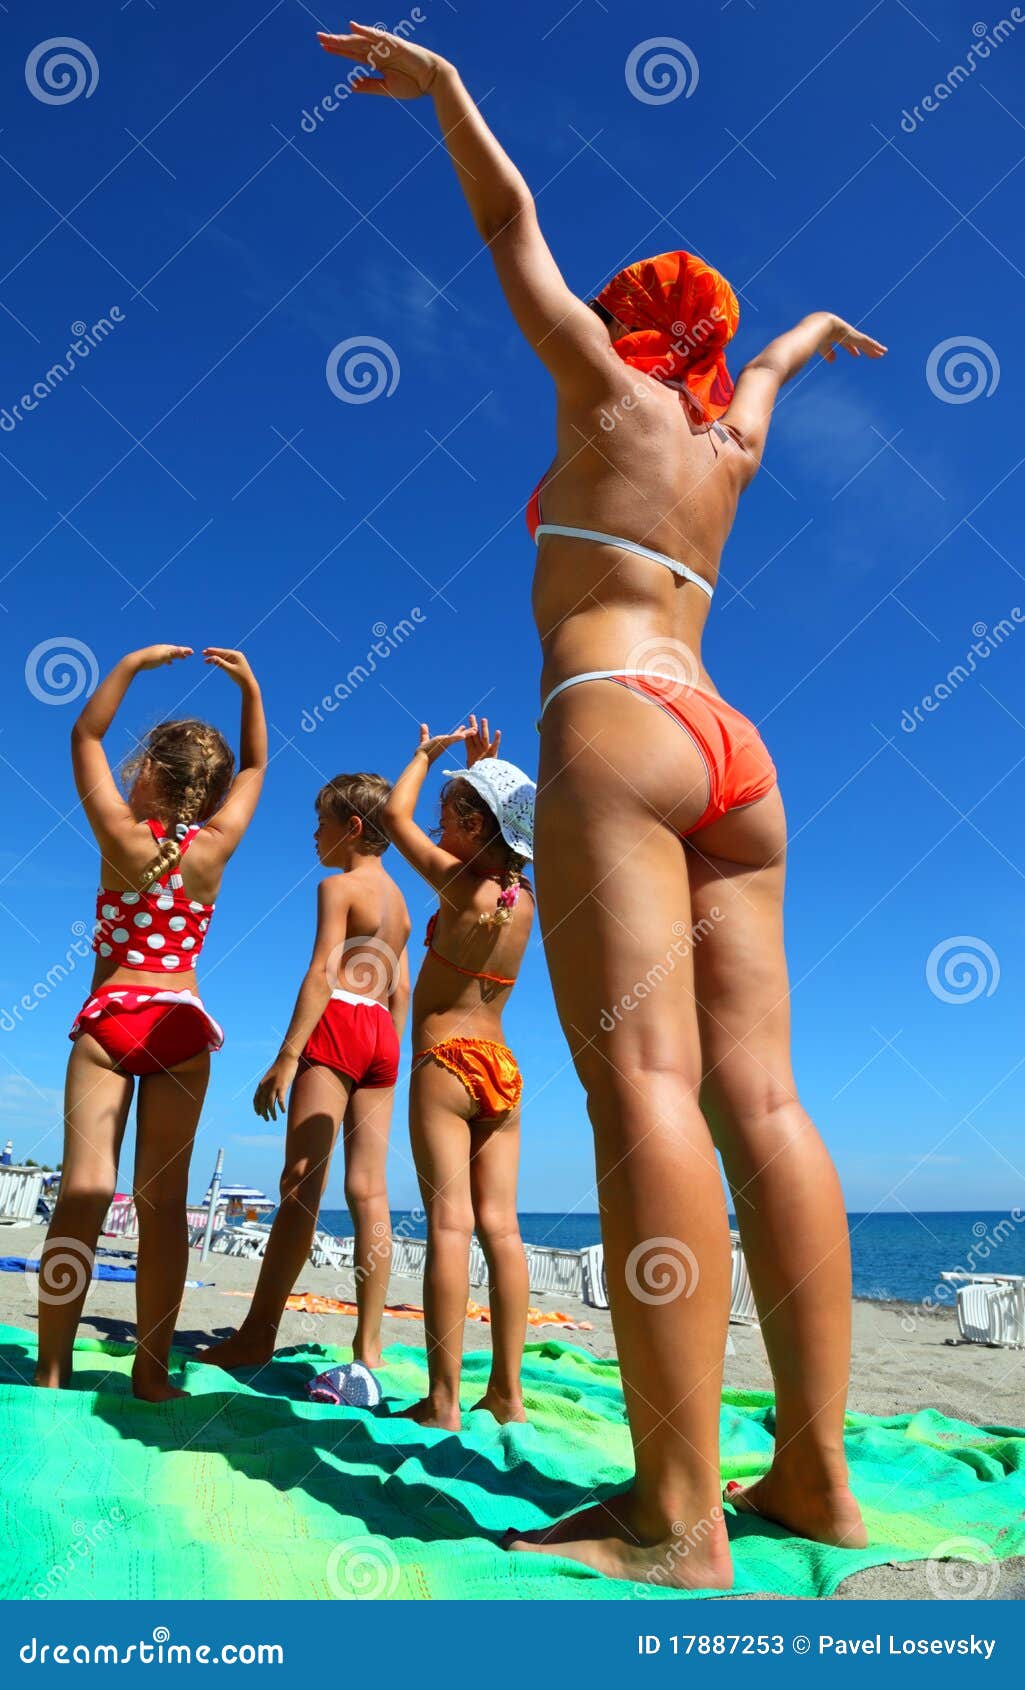 с детьми голым на пляж фото 29